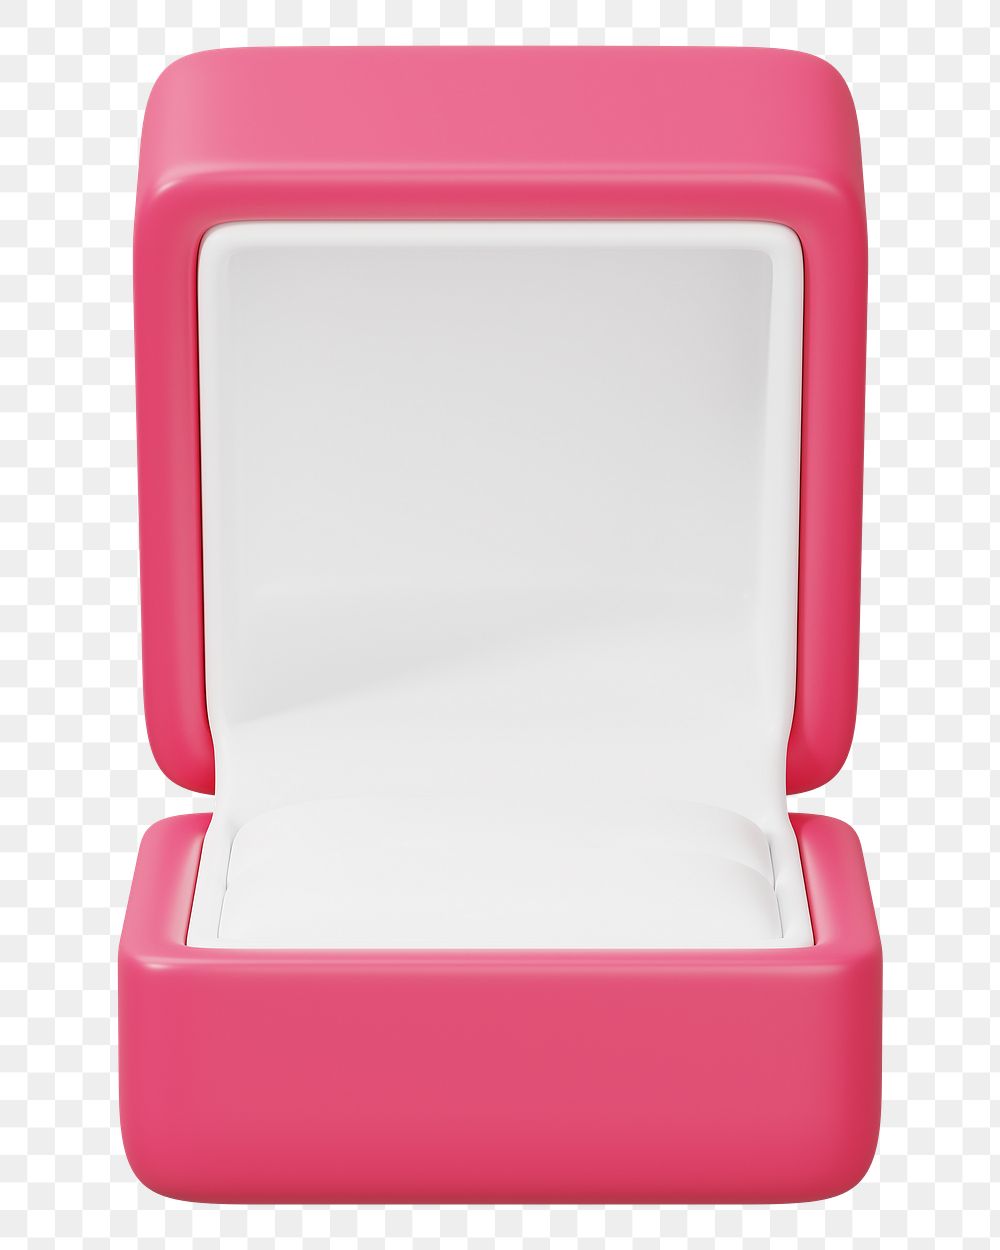 Pink ring box png 3D illustration, transparent background